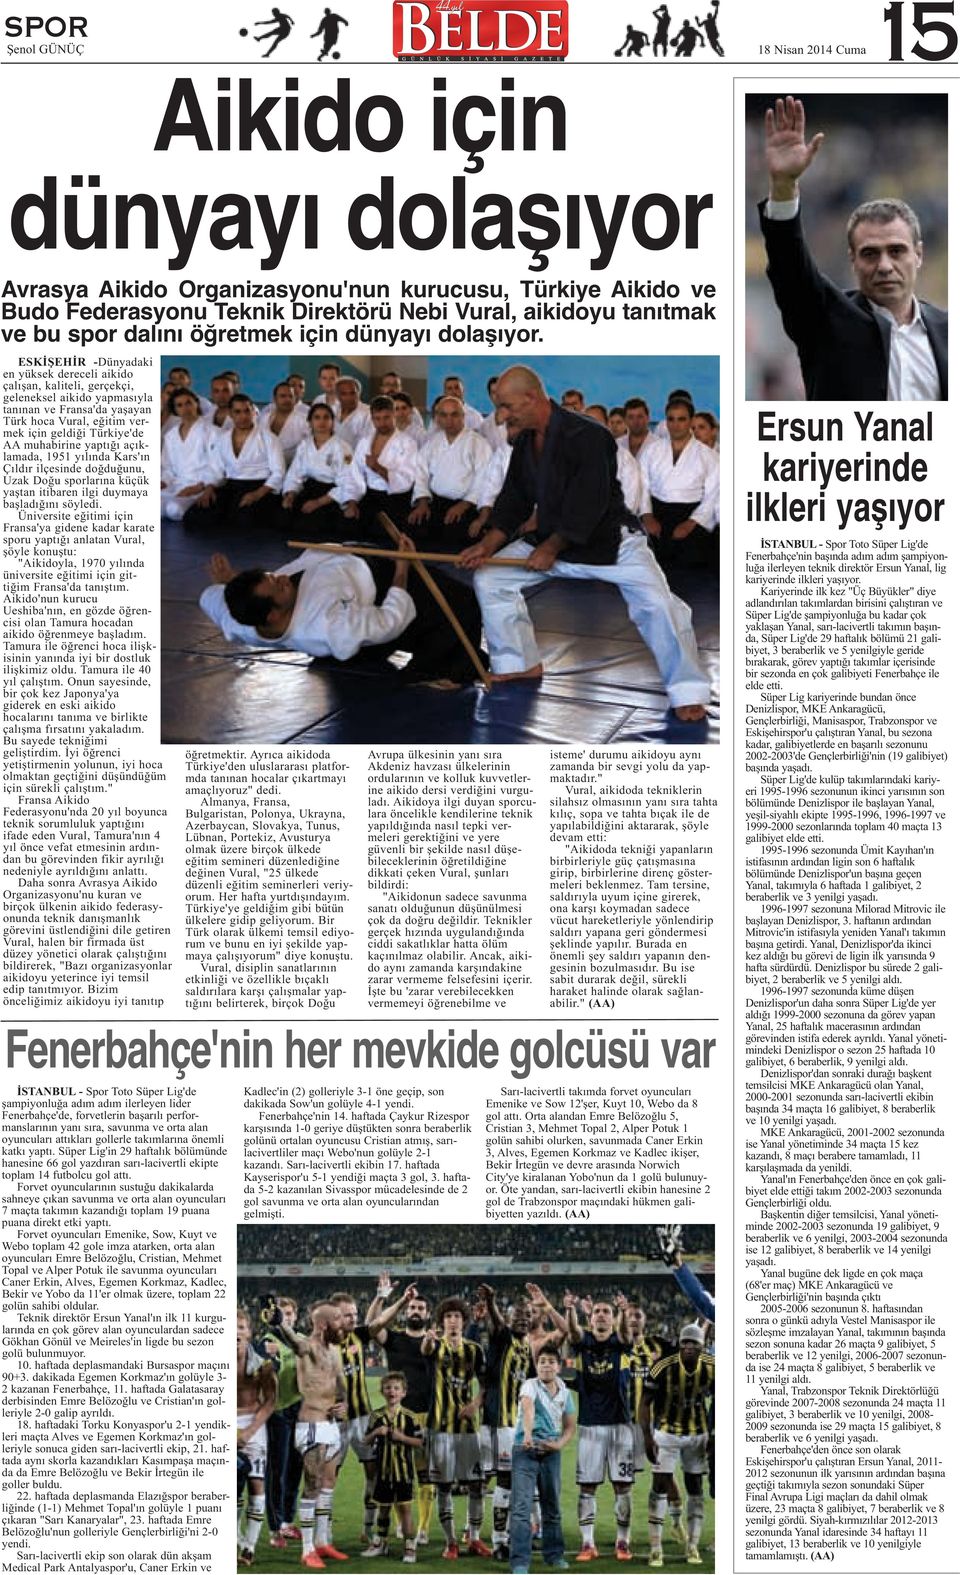 ESKİŞEHİR -Dünyadaki en yüksek dereceli aikido çalışan, kaliteli, gerçekçi, geleneksel aikido yapmasıyla tanınan ve Fransa'da yaşayan Türk hoca Vural, eğitim vermek için geldiği Türkiye'de AA